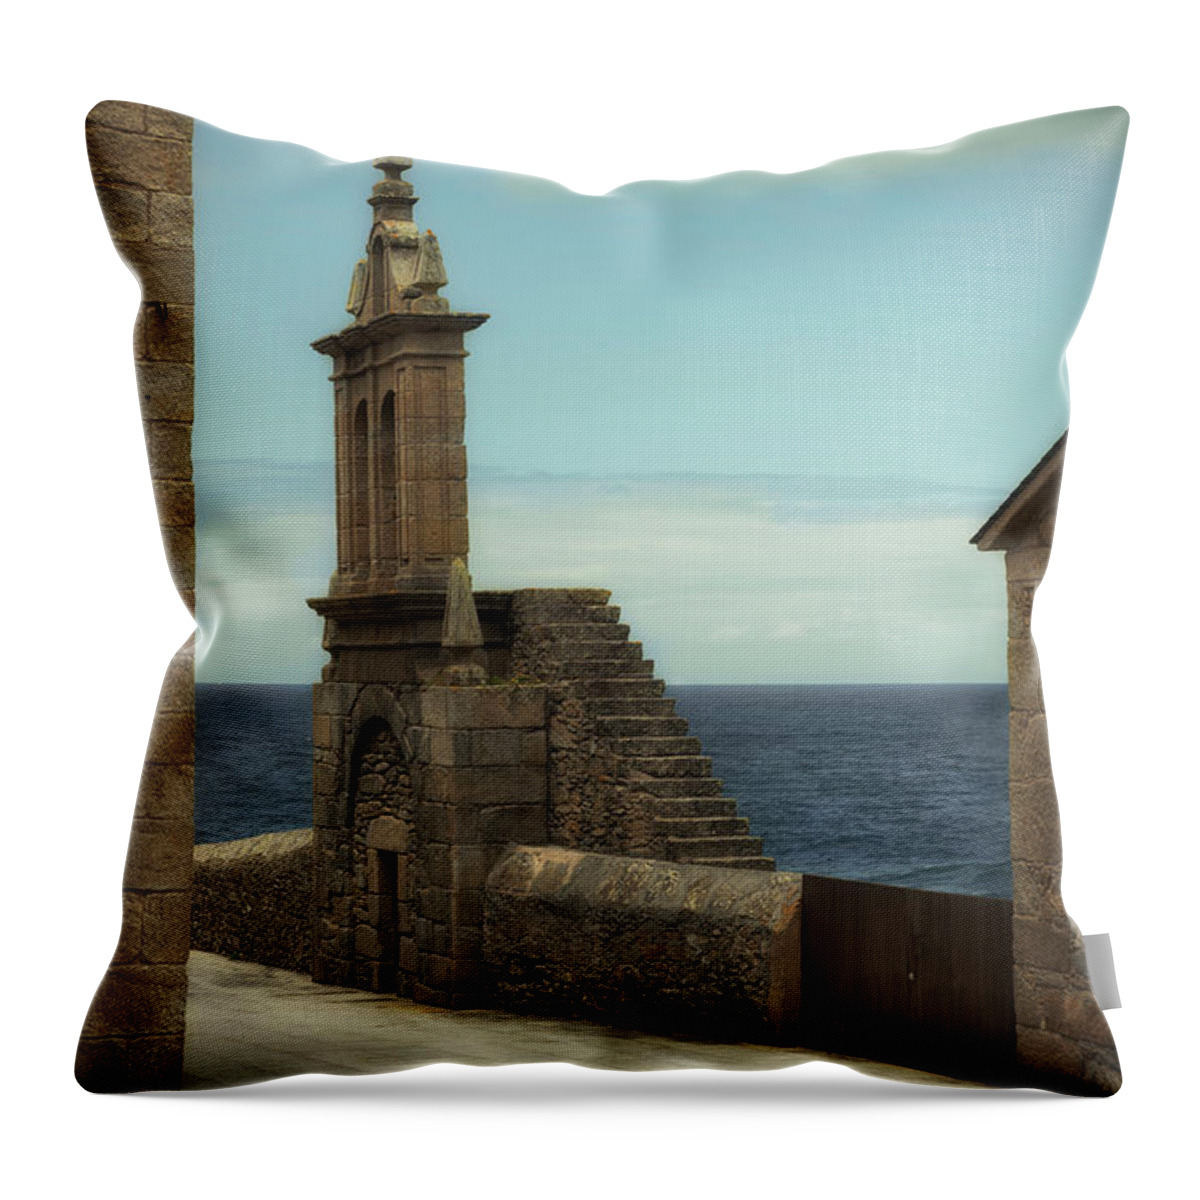 Virxe Da Barca Throw Pillow featuring the photograph Virxe da Barca church in Muxia - Bell gable by RicardMN Photography